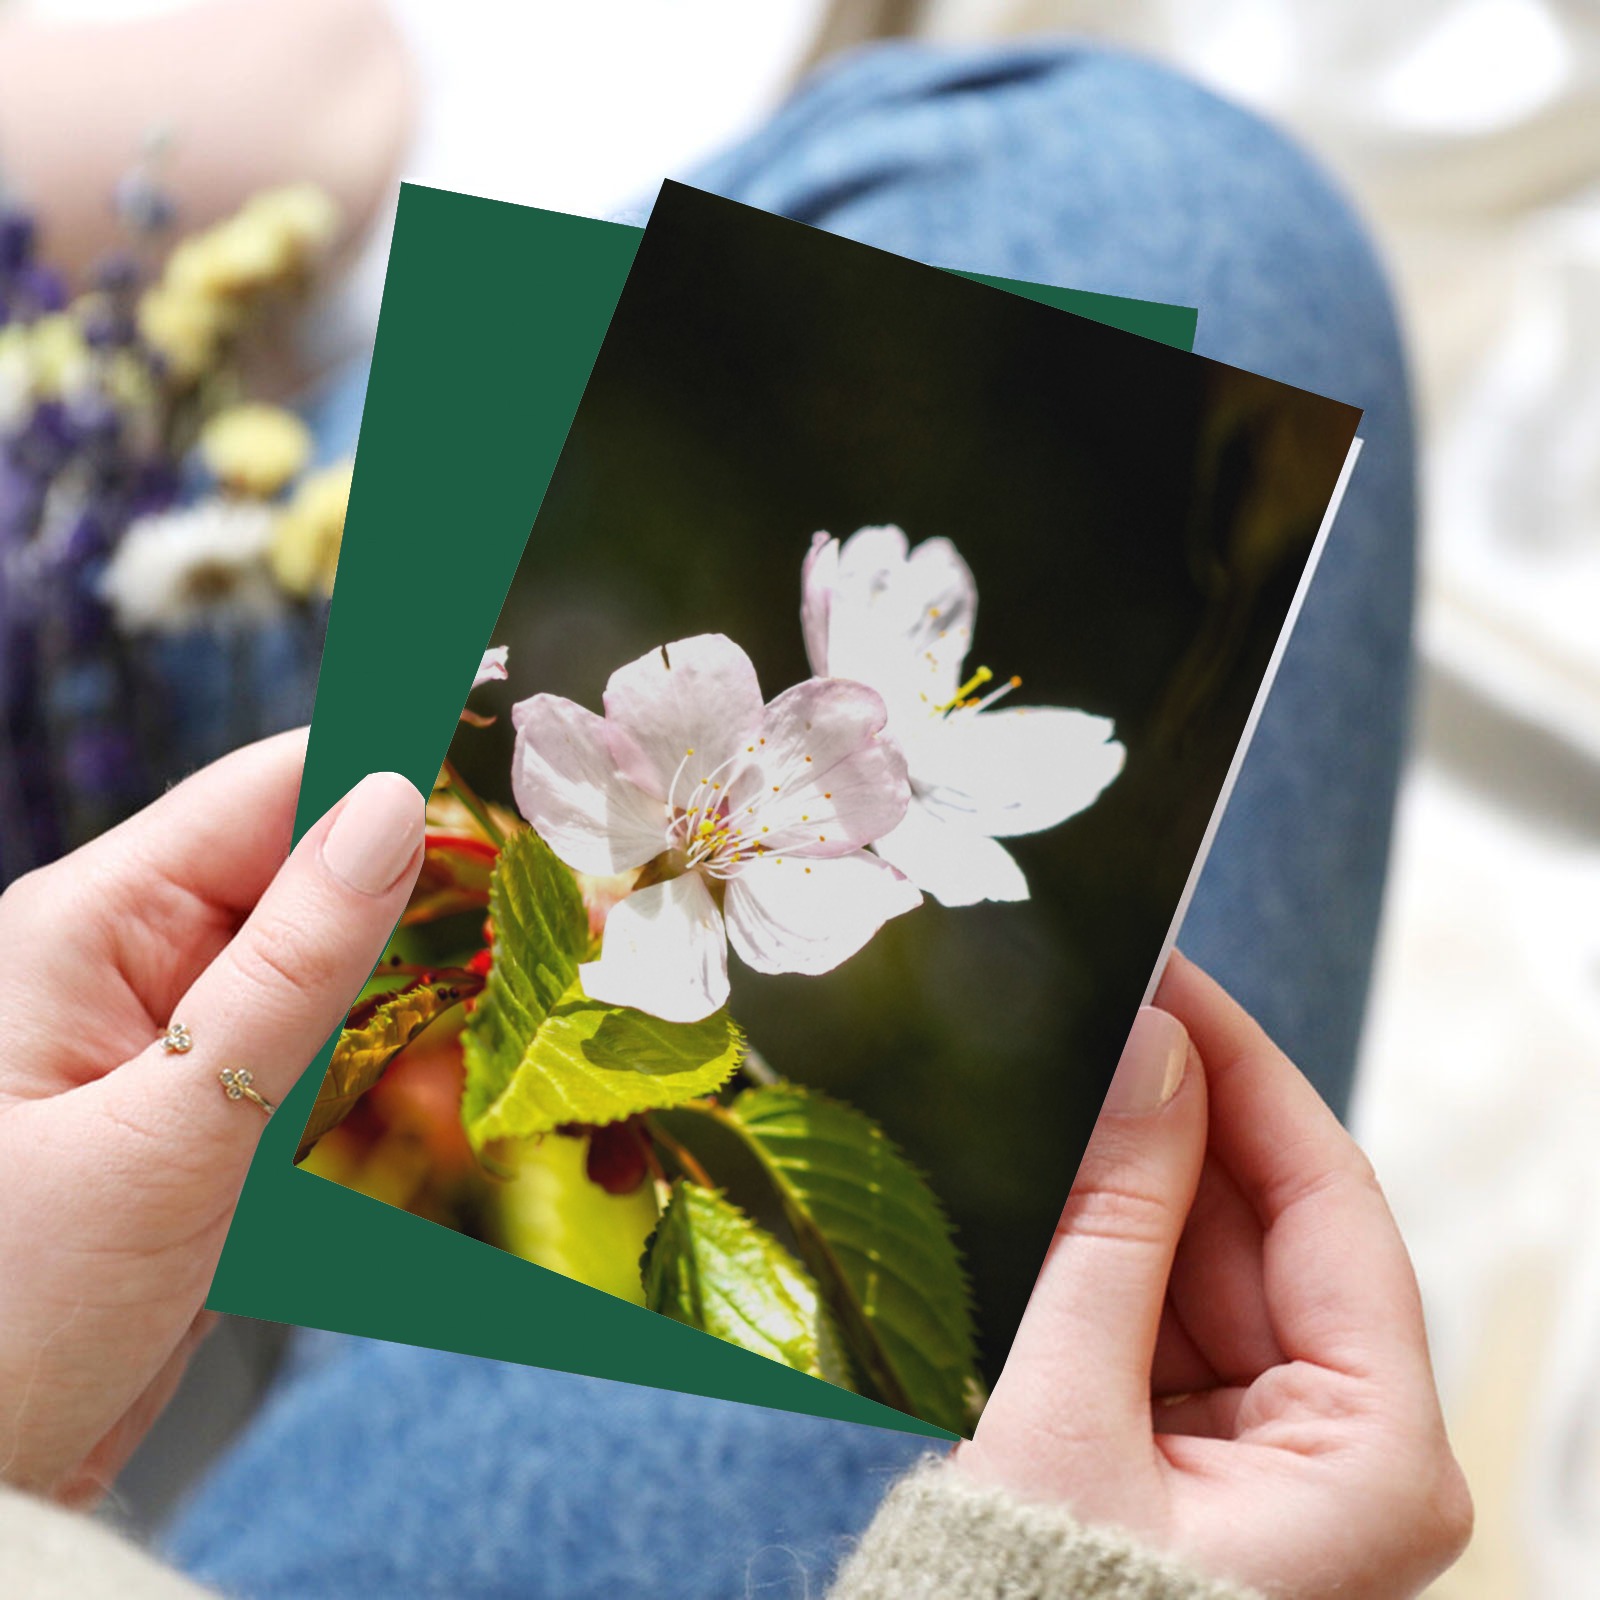 Sakura flowers enjoy sunshine. Hanami season magic Greeting Card 8"x6"